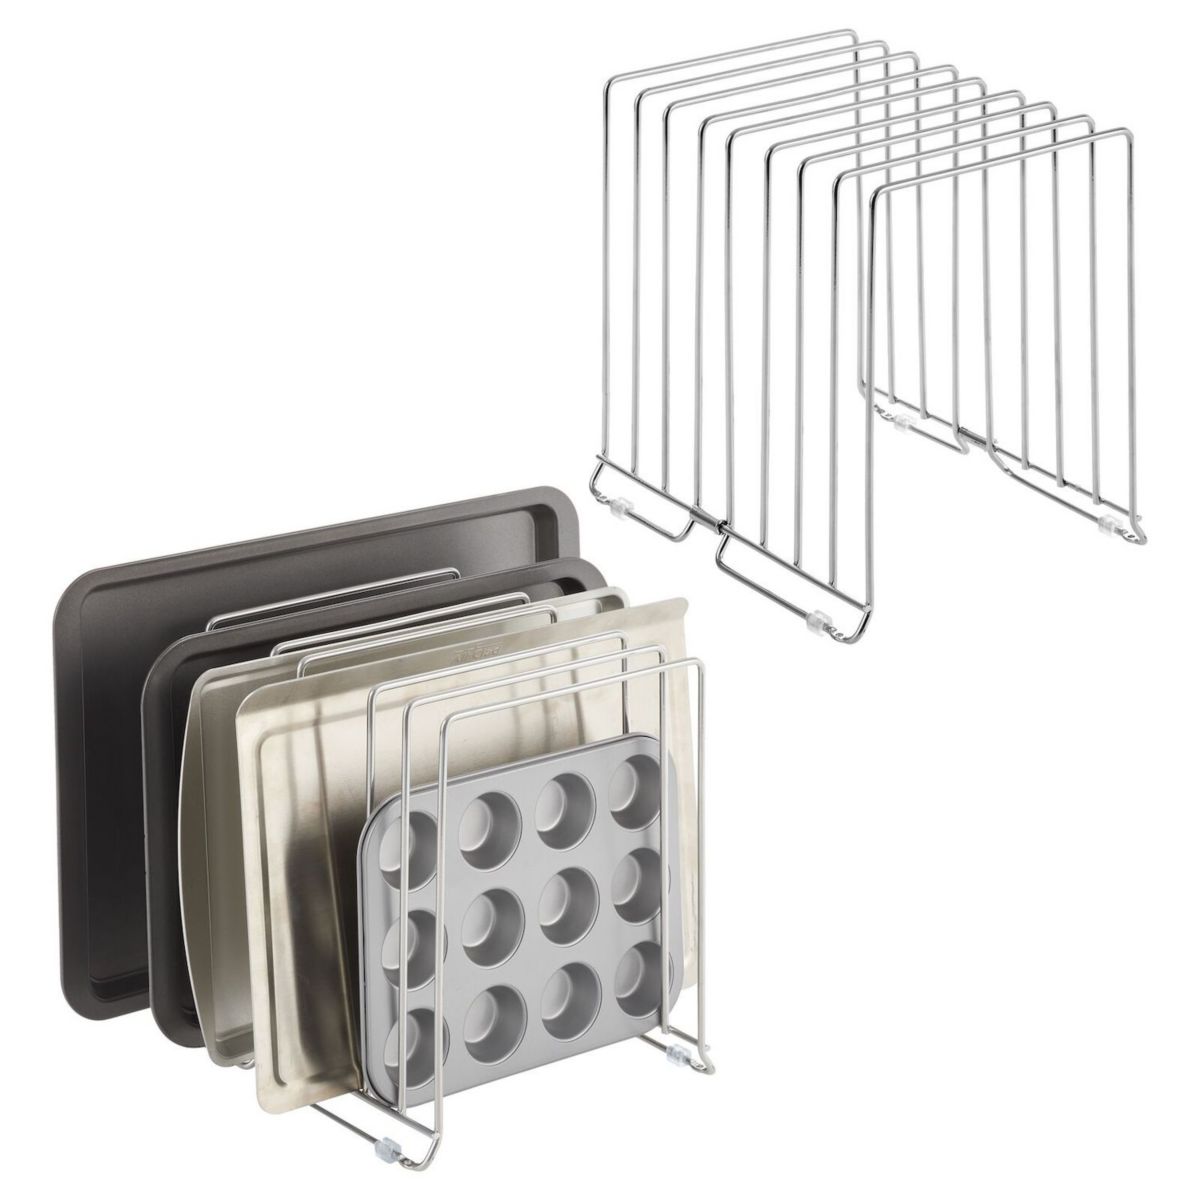 mDesign Large Metal 8 Slot Baking Sheet/Appliance Organizer Rack, 2 Pack MDesign